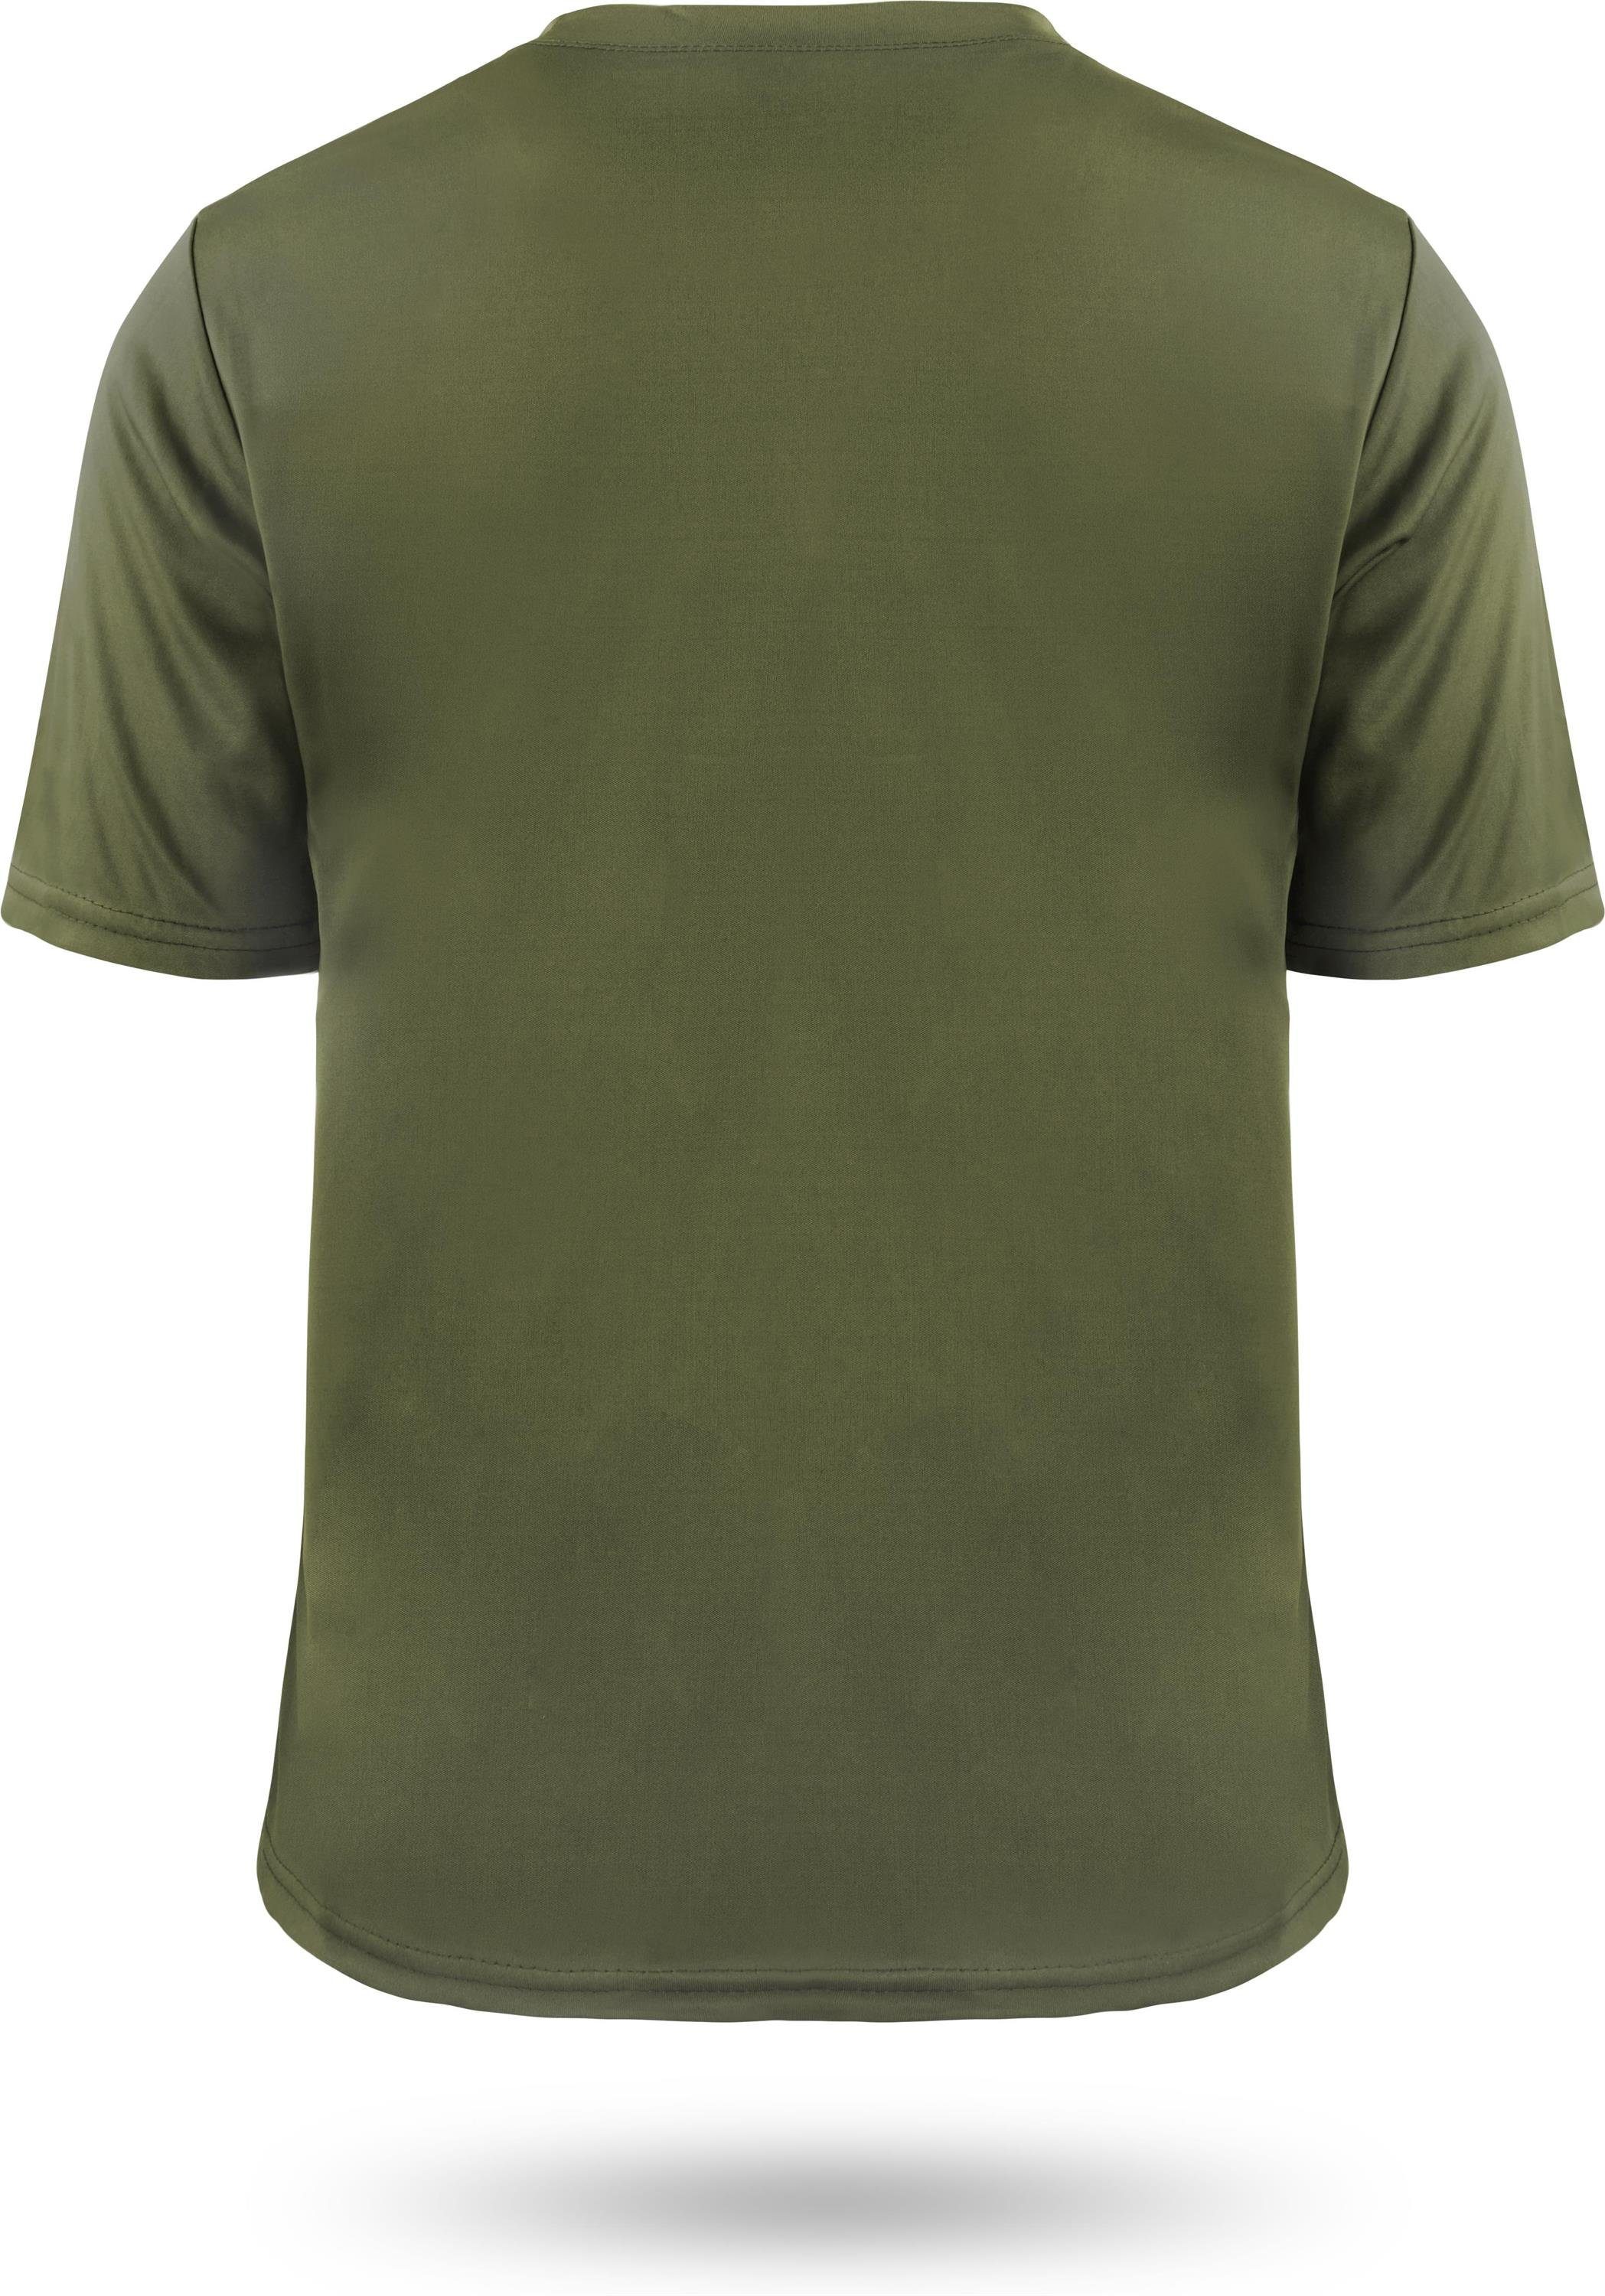 T-Shirt Shirt Kurzarm Agra Cooling-Material mt Grün normani Funktionsshirt Funktions-Sport Fitness Herren Sportswear